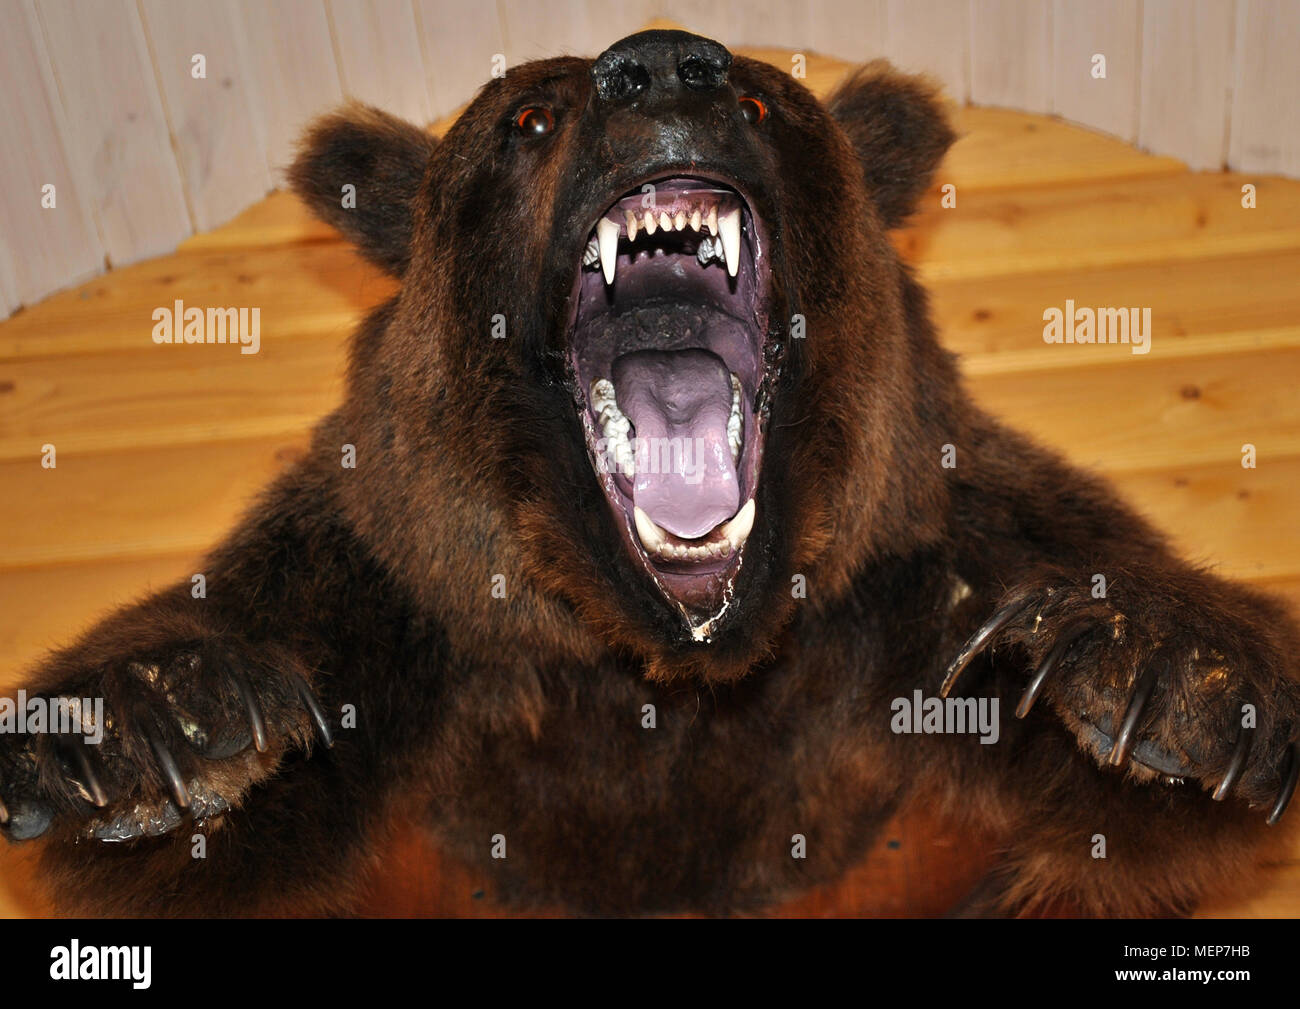 Sulla parete pende un orso ripieni di testa con una bocca aperta. Foto Stock